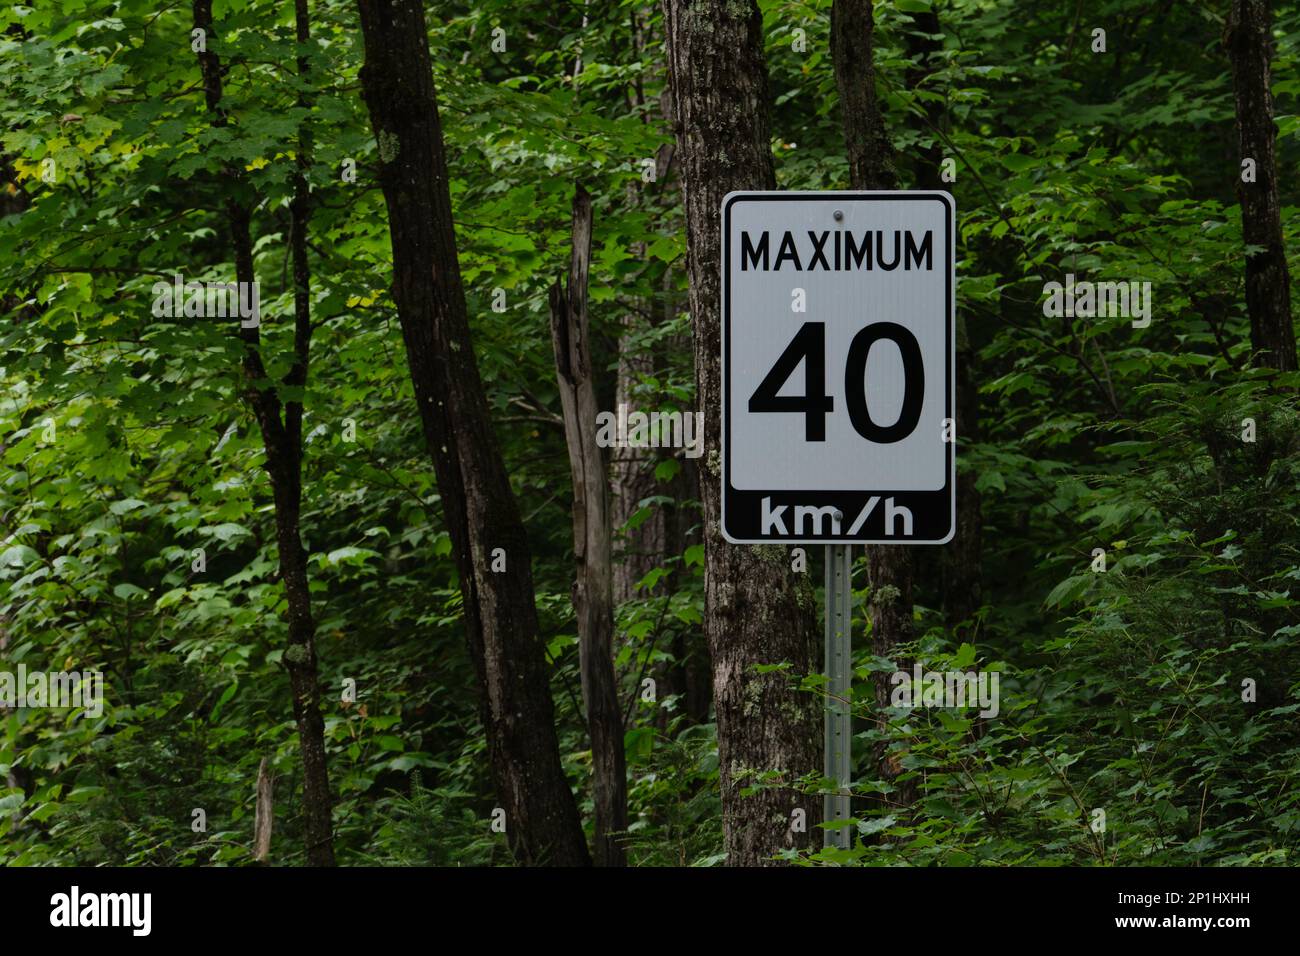 Un segnale del limite di velocità dell'Ontario imposta una velocità massima di 40 km/h nella foresta. Il segno è visto tra gli alberi nel bosco. Foto Stock